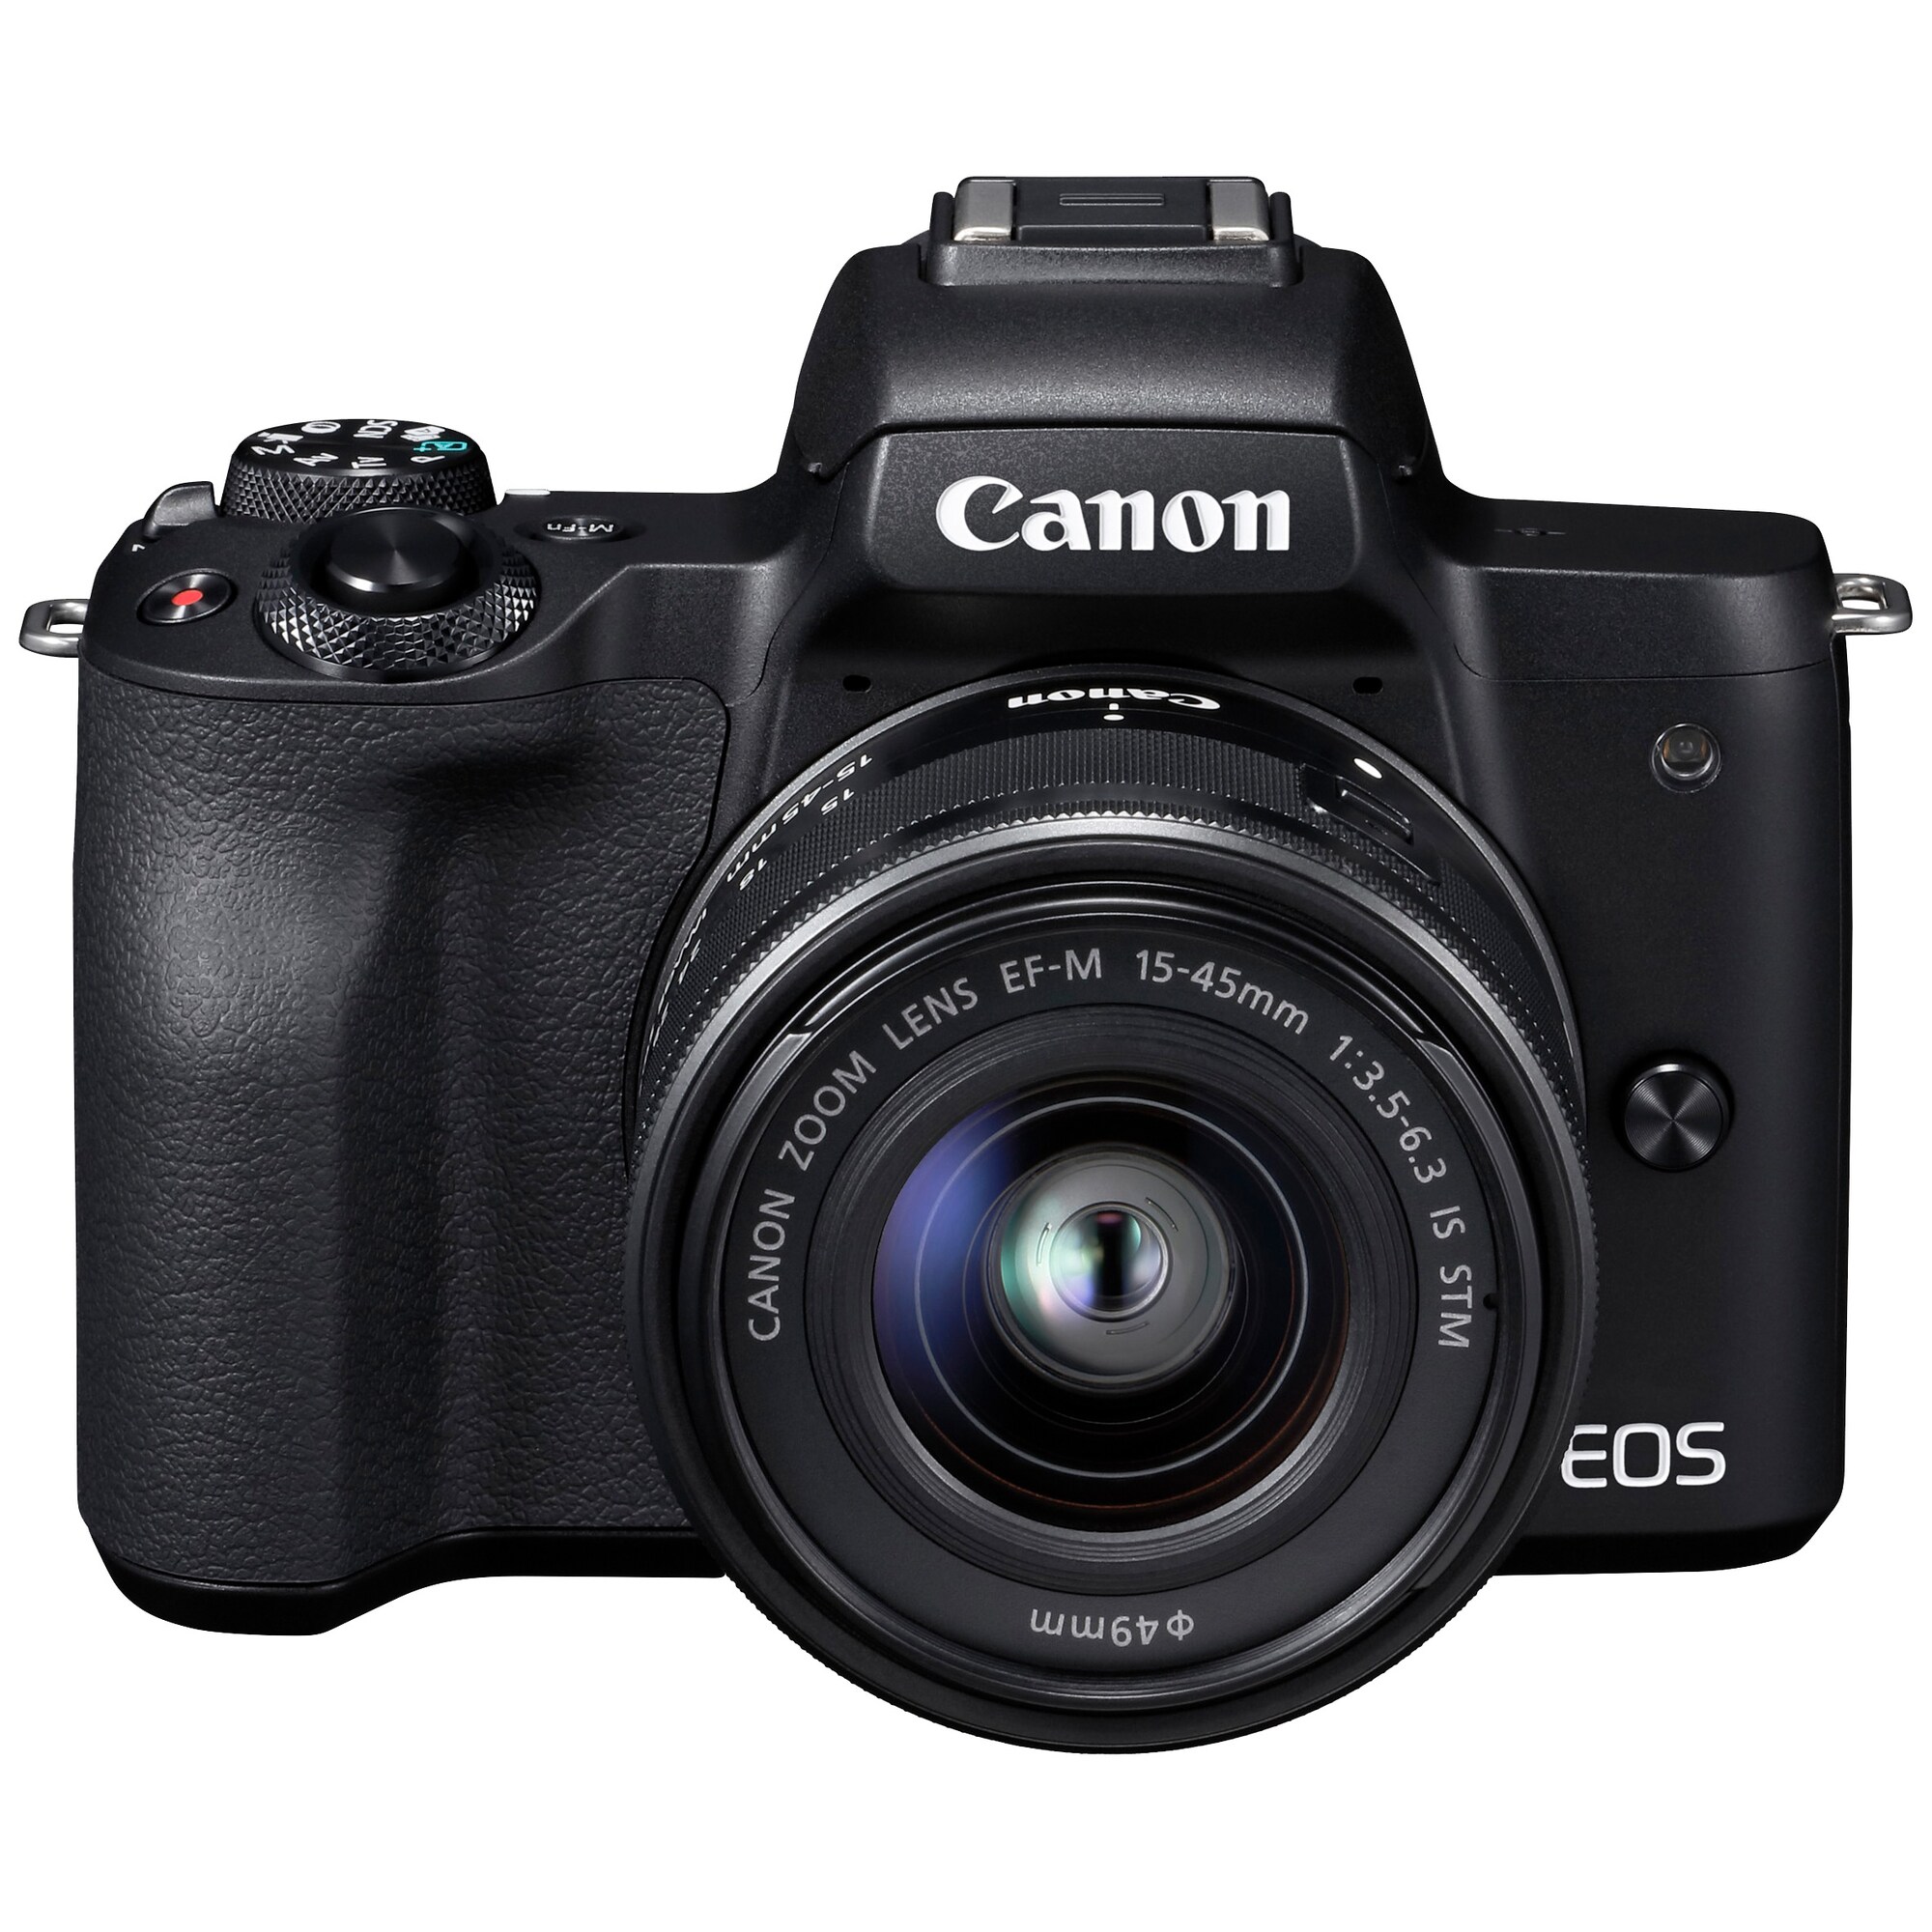 Canon EOS M50 kompakti järjestelmäkamera + 15-45 IS STM objektiivi -  Gigantti verkkokauppa